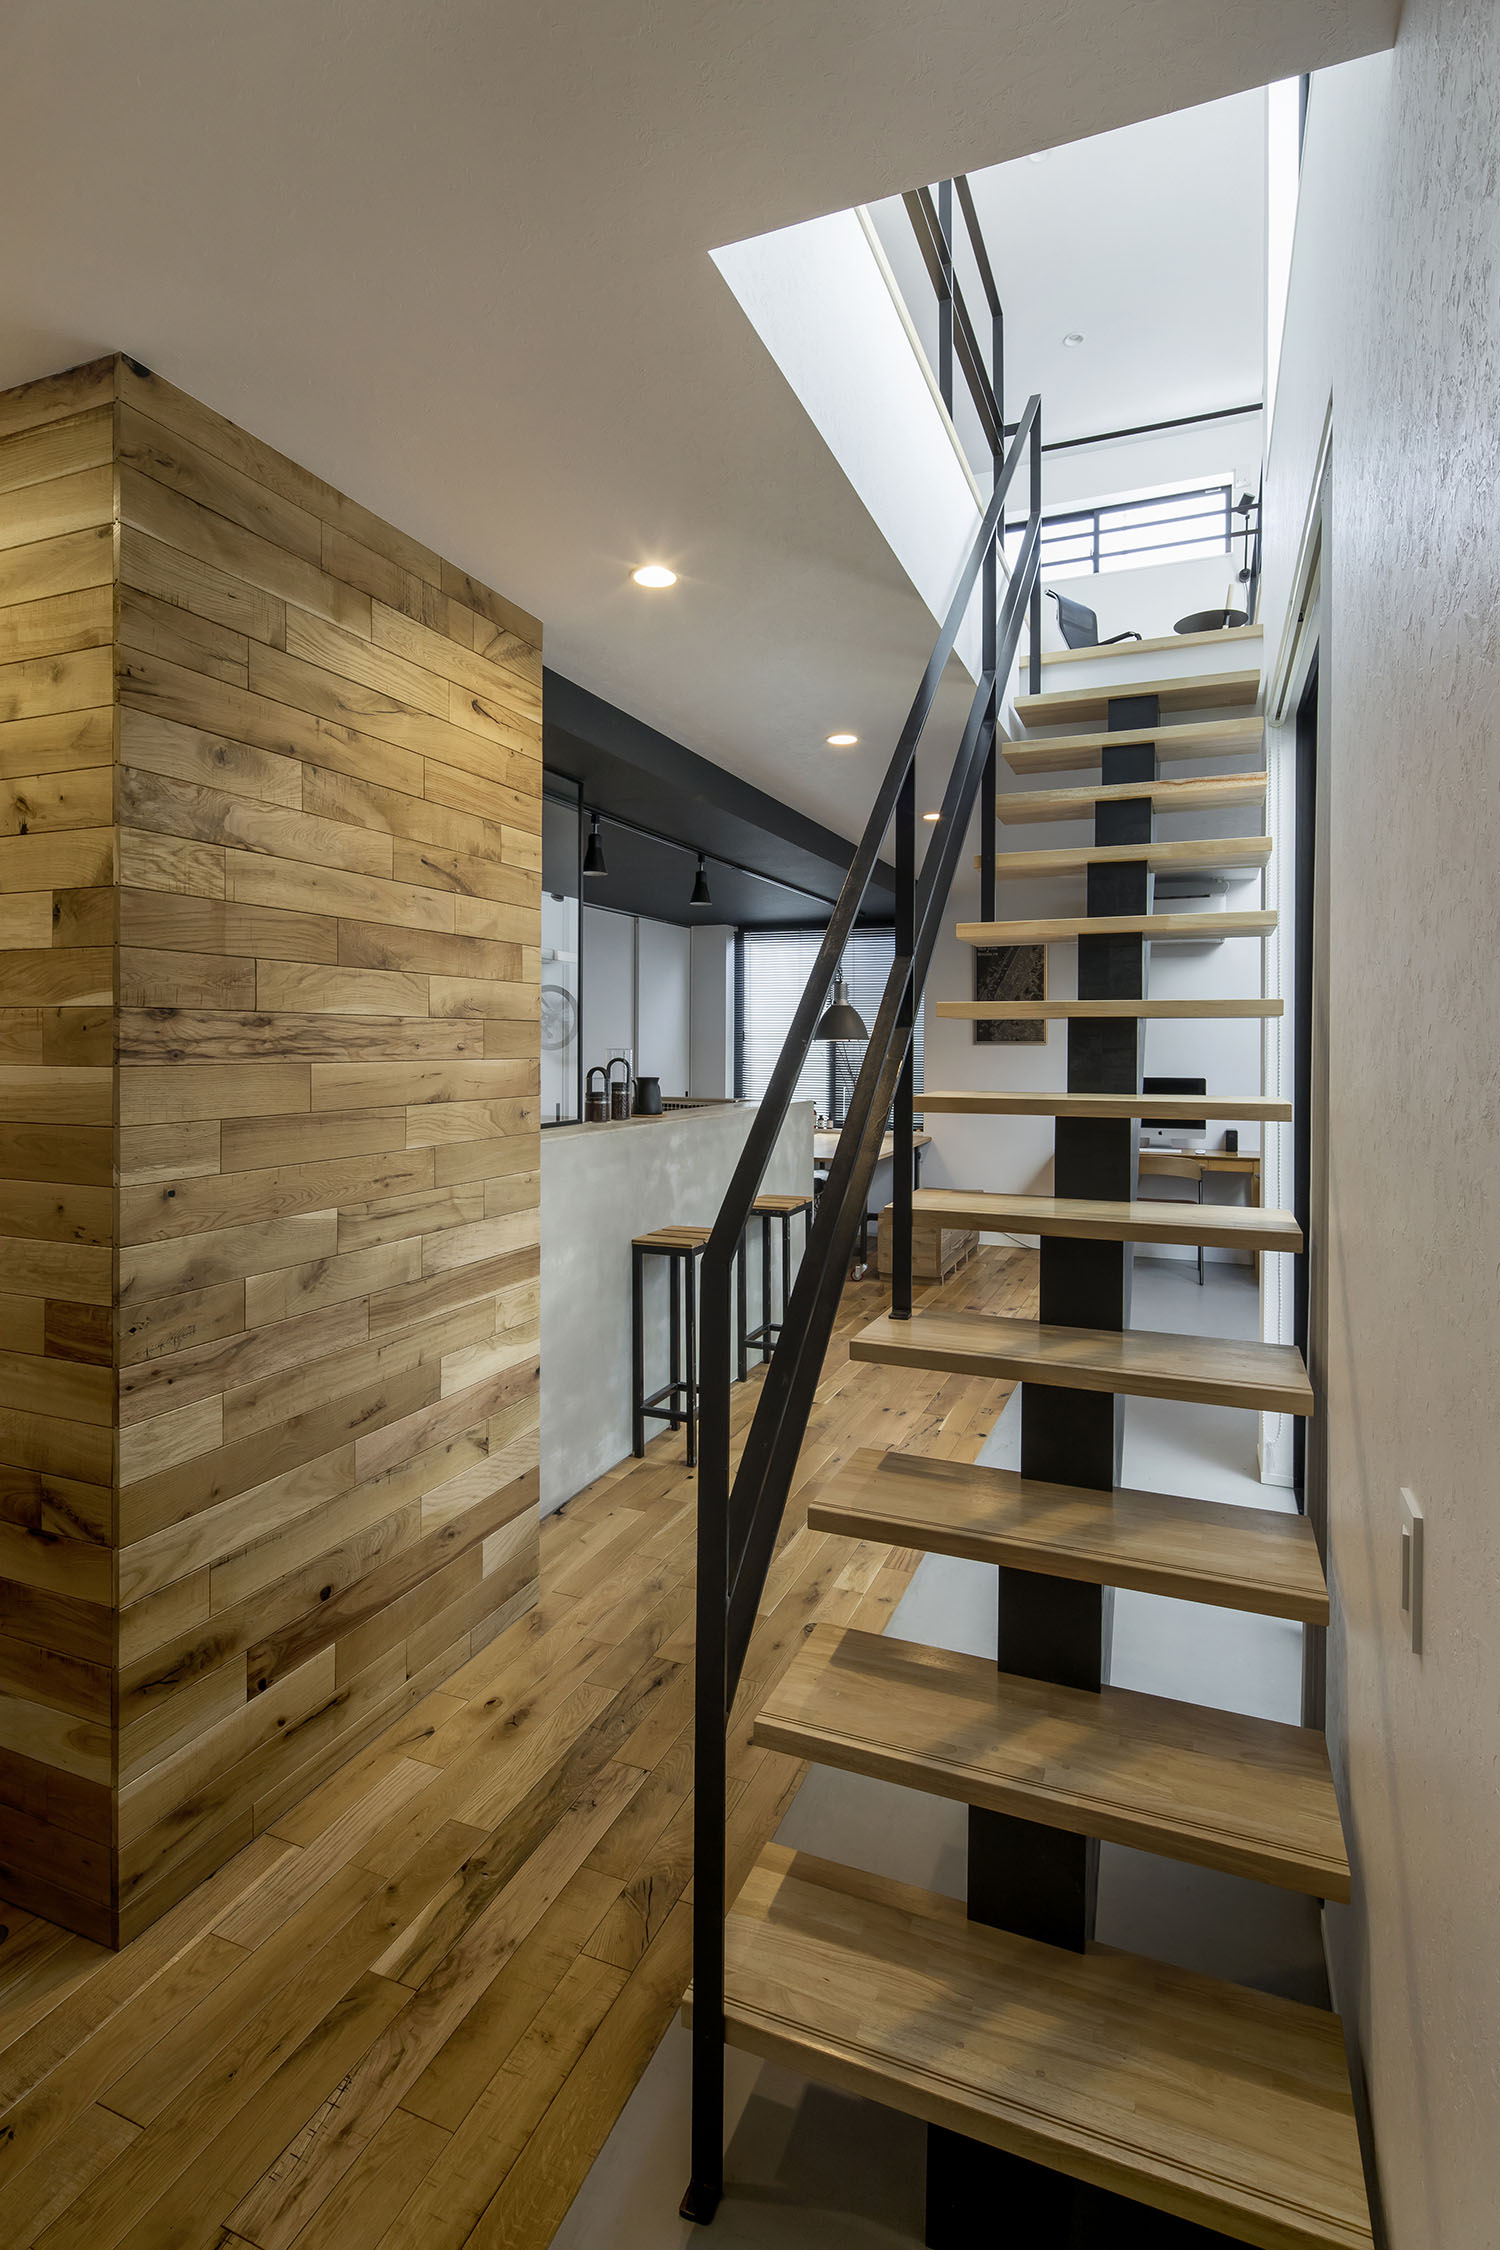 床と壁に木材を使った部屋にある、木製のスケルトン階段・フリーダムアーキテクツの事例